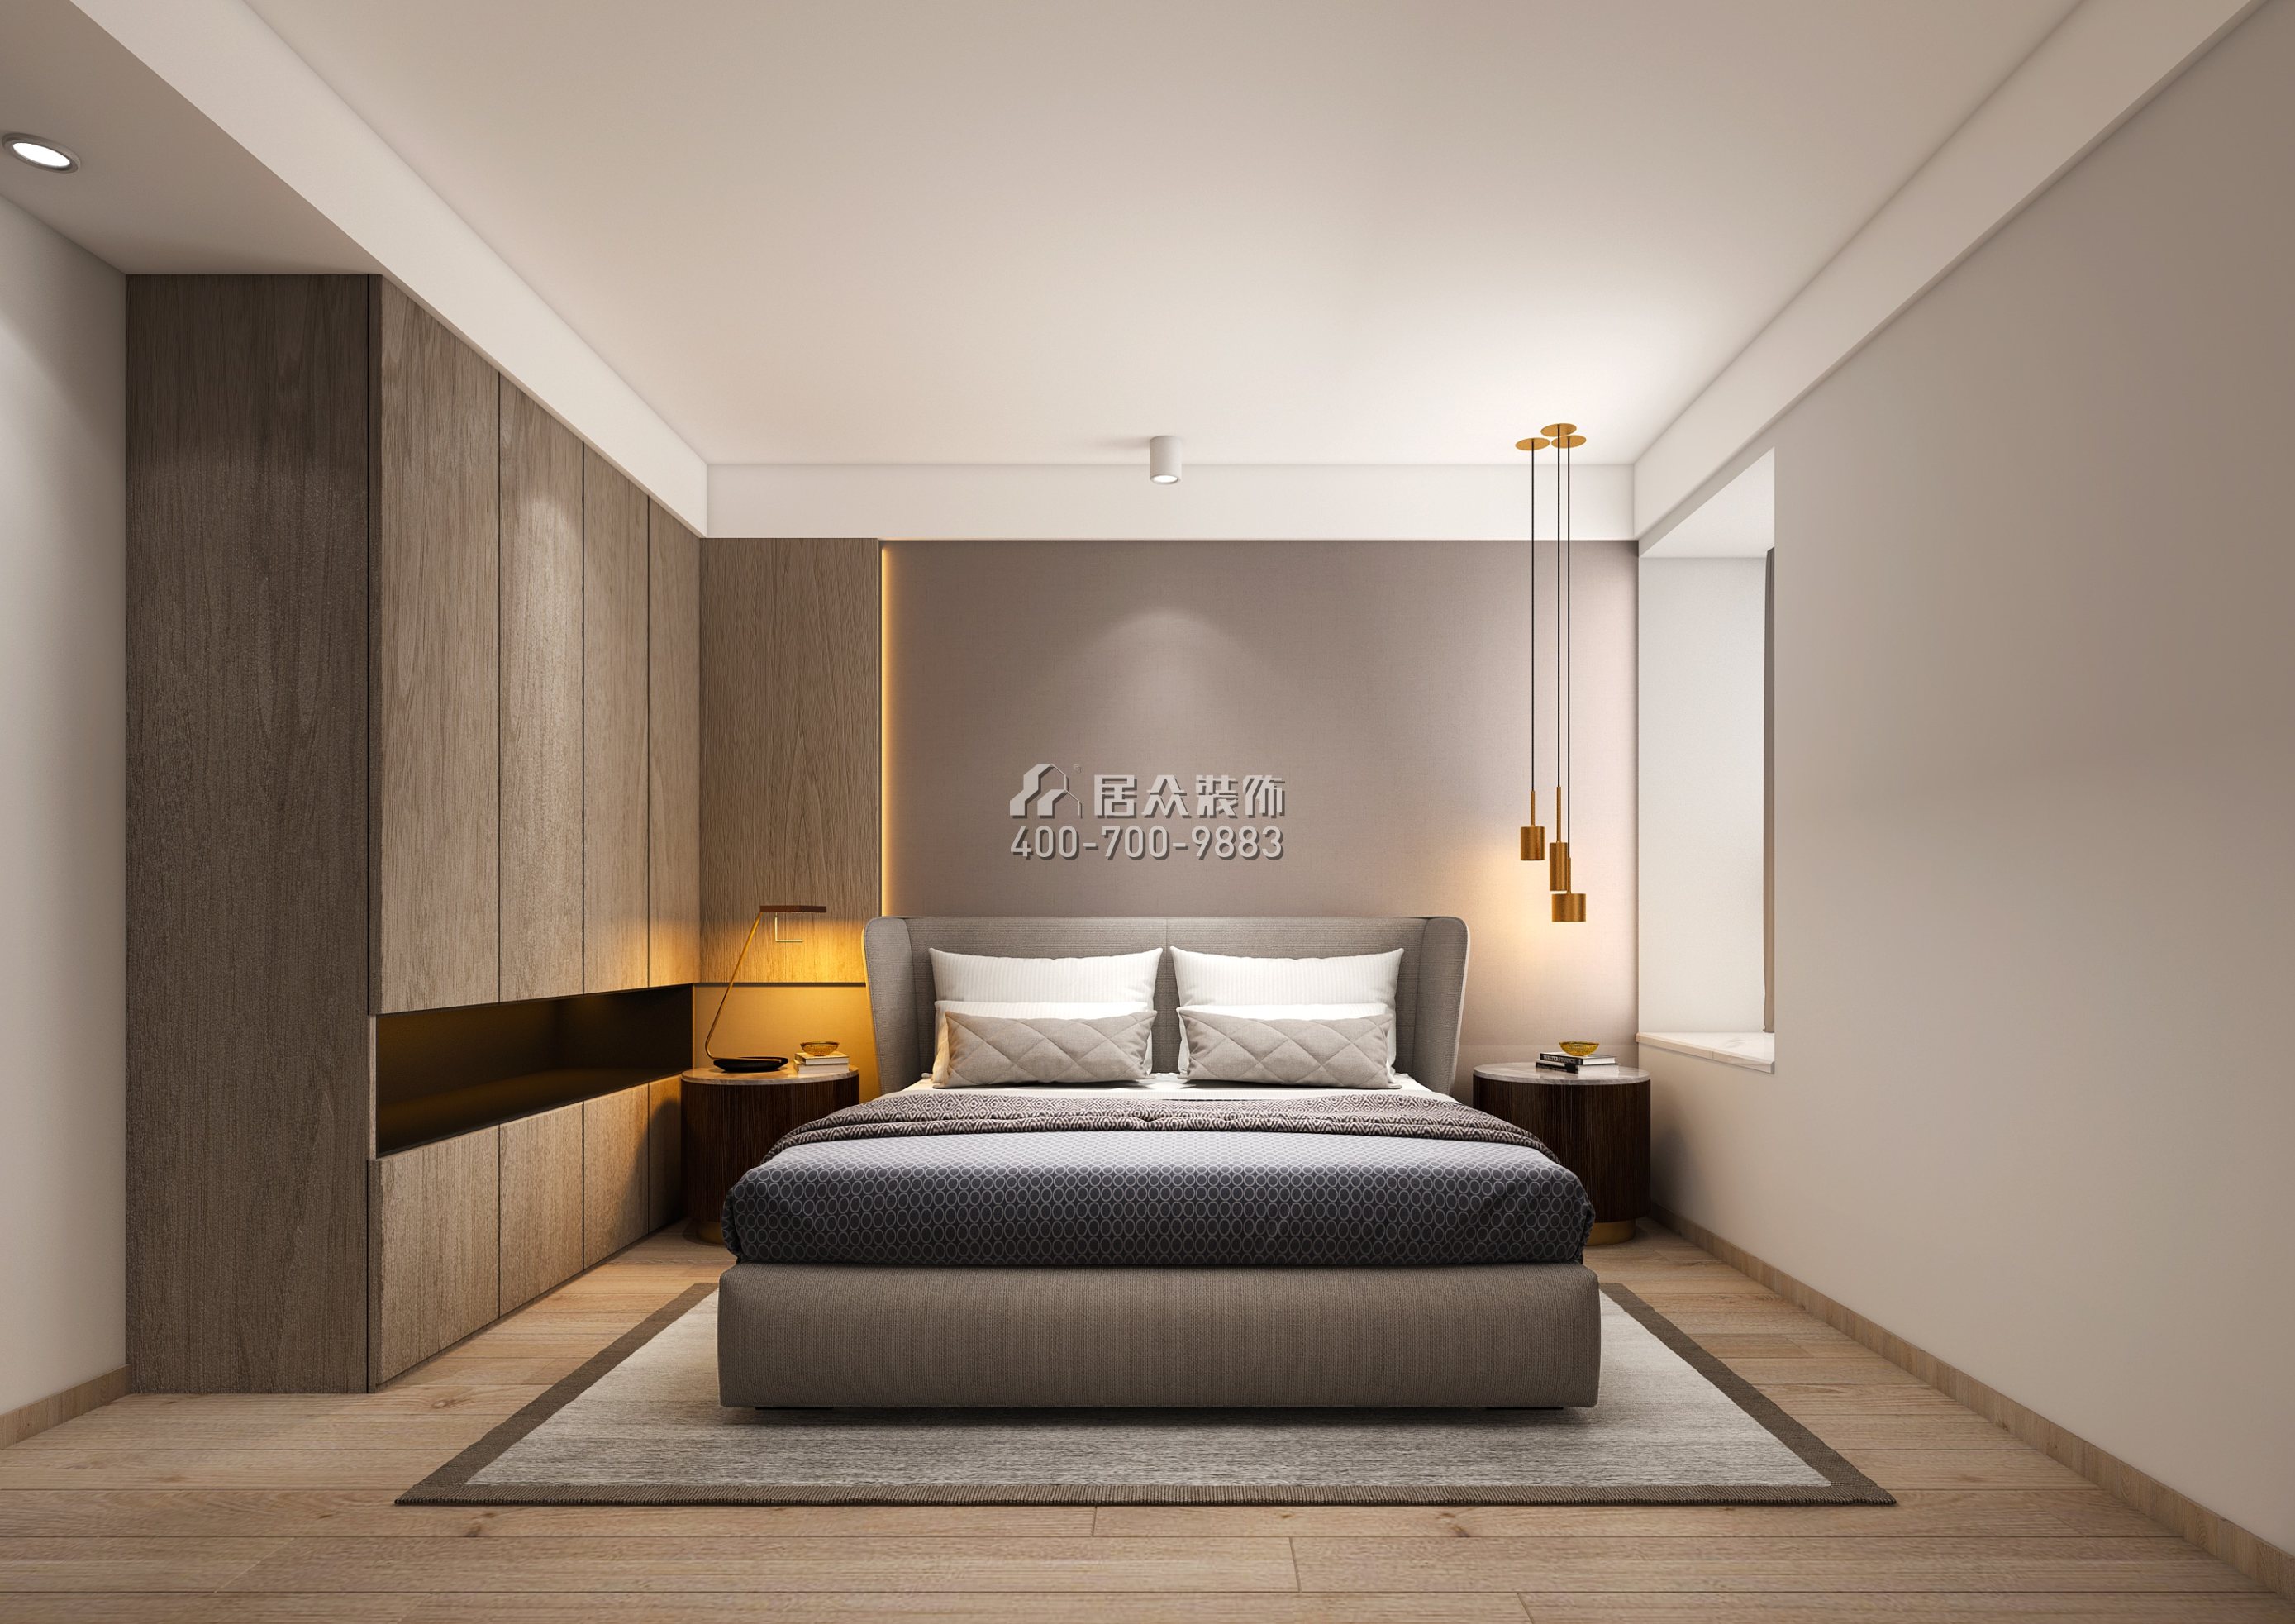 福宇轩110平方米现代简约风格平层户型卧室装修效果图